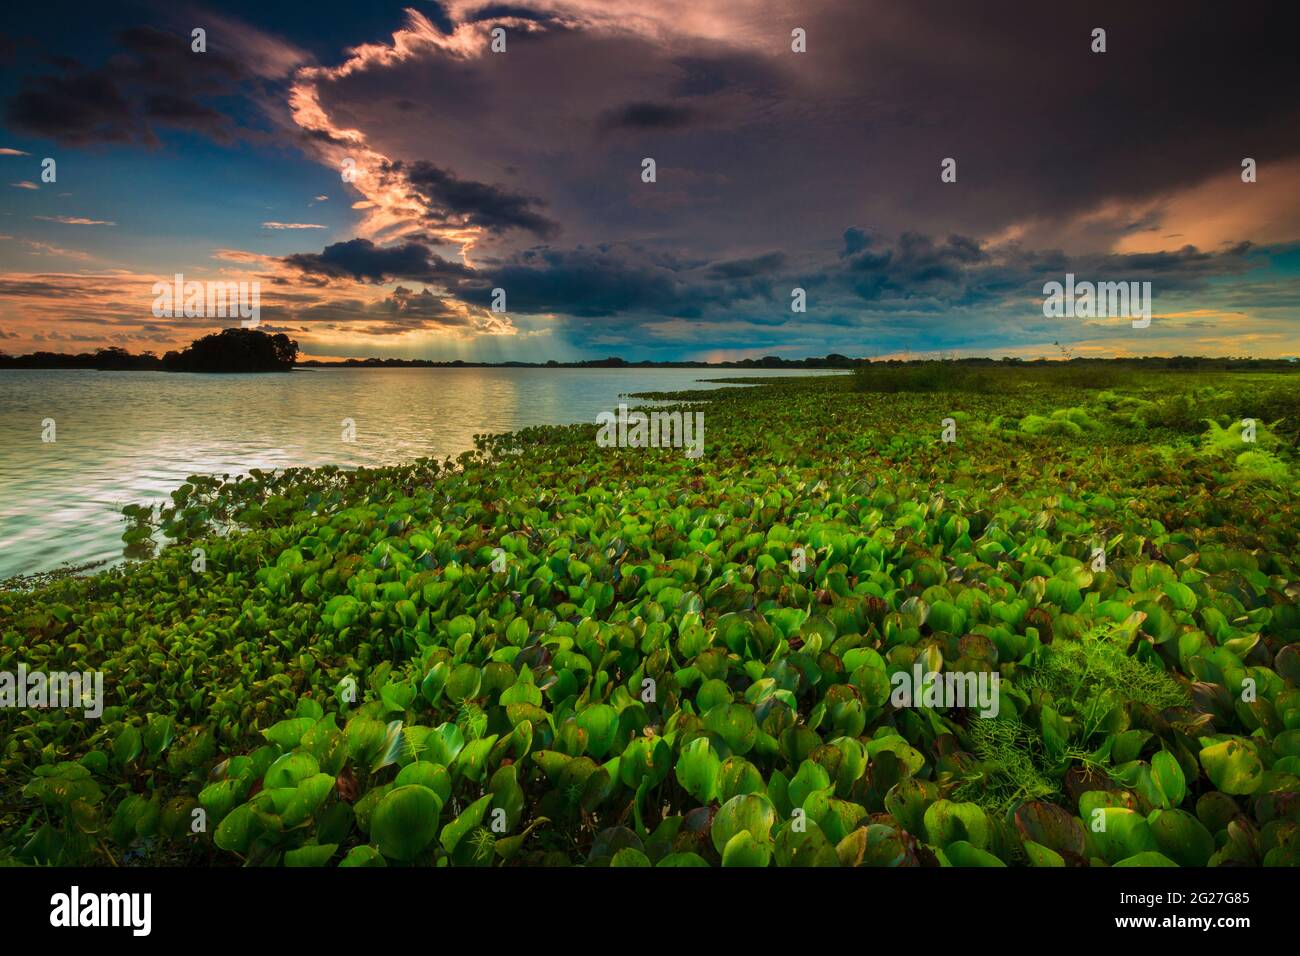 Panamalandschaft bei Abendlicht am Seeufer des Refugio de vida Silvestre Cienage Las Macanas Naturschutzgebiet, Republik Panama. Stockfoto